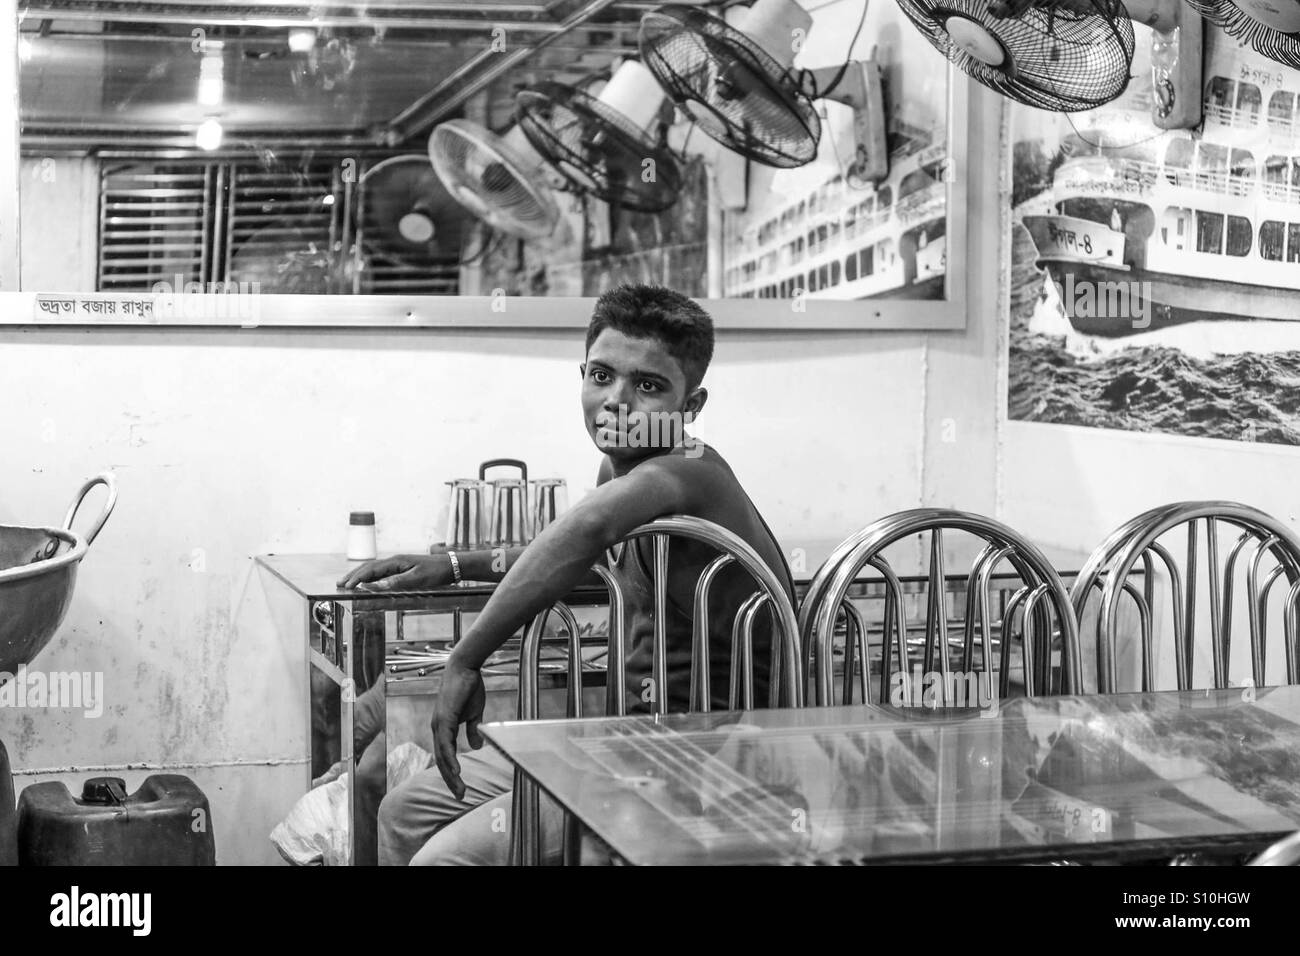 Child worker sitting desperate in restaurant Stock Photo